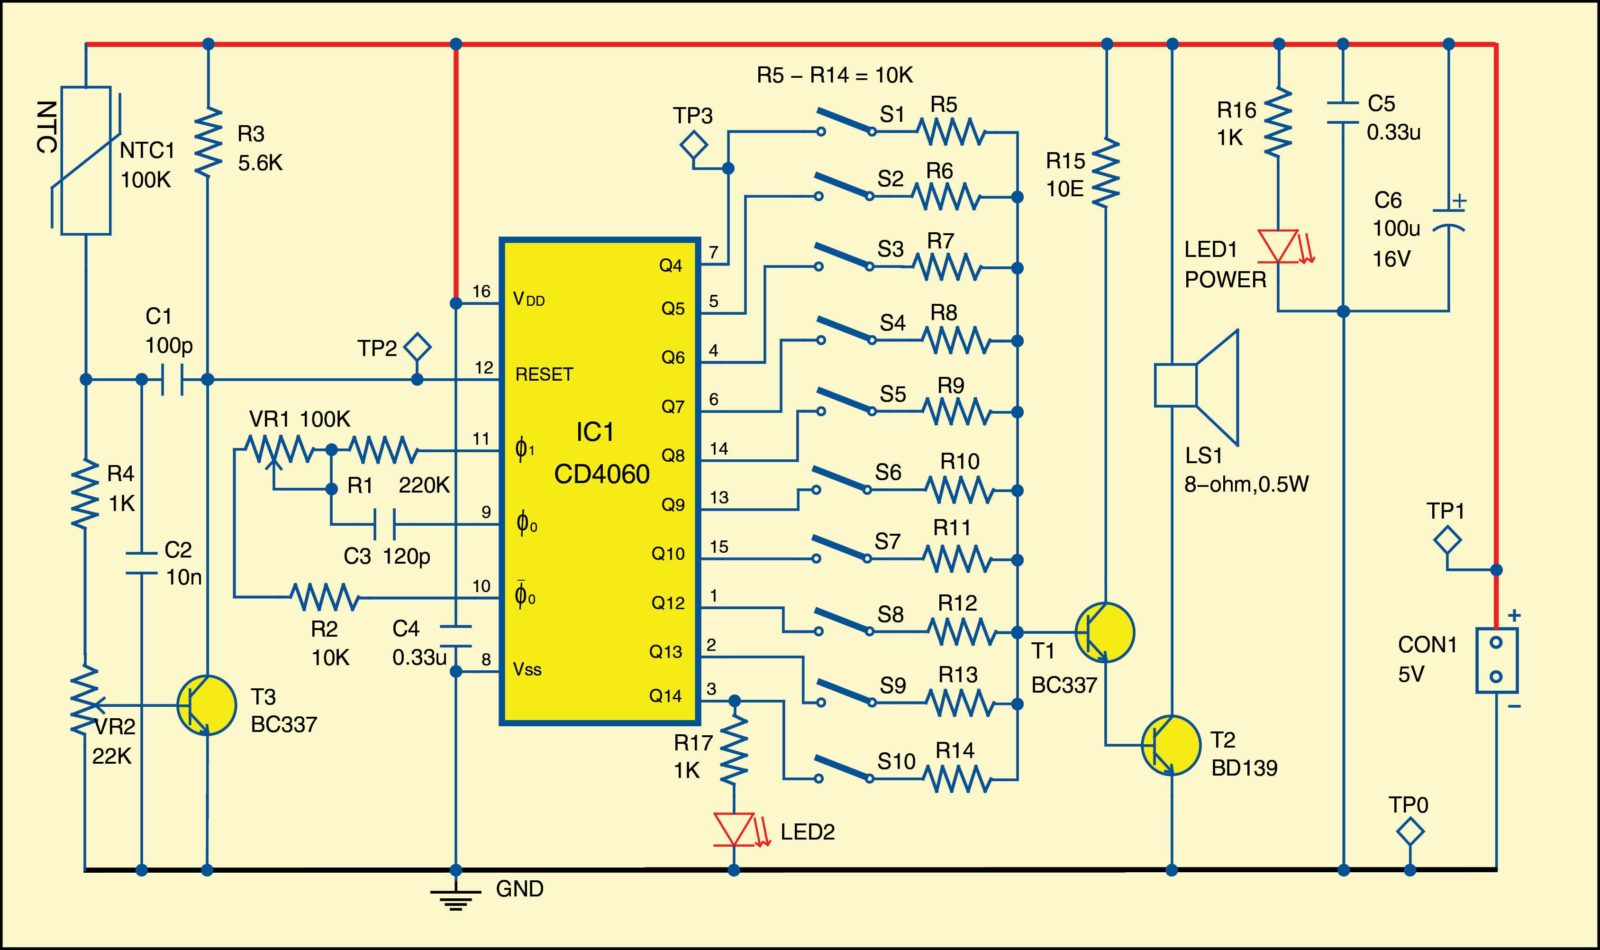 Fig. 1: Circuit diagram of multi-tone configurable alarm